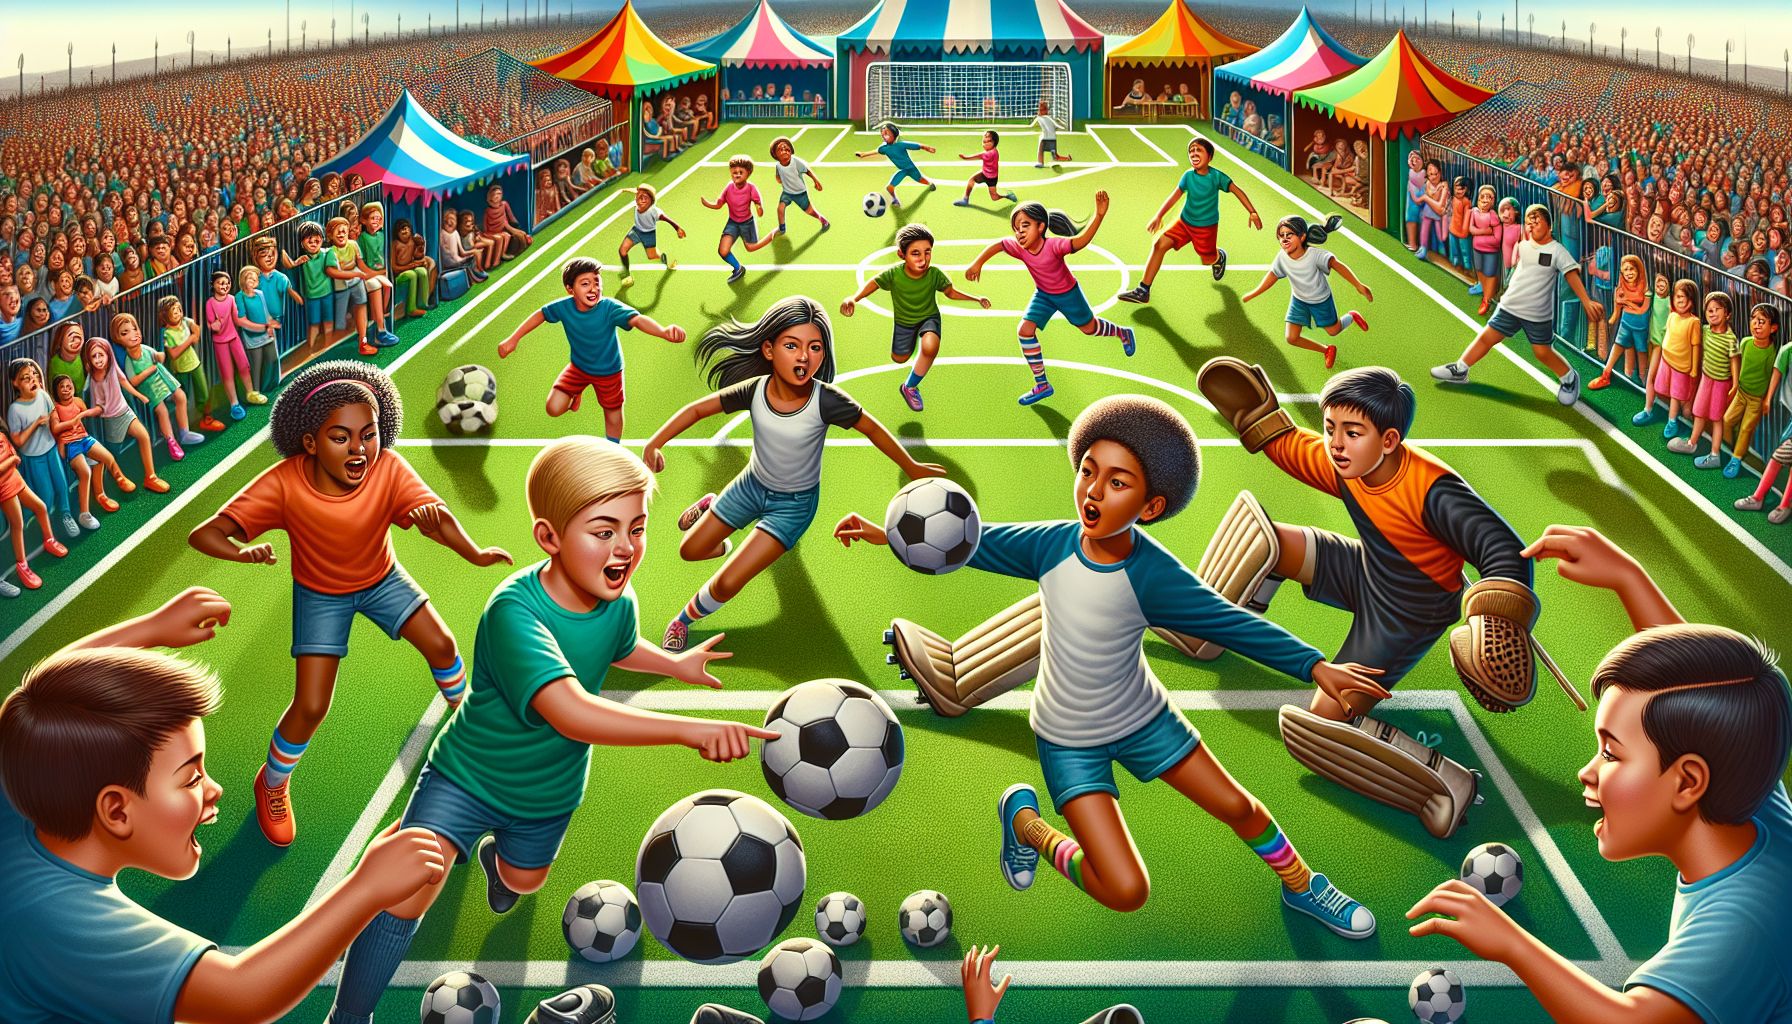 Integracja i współpraca wśród dzieci na obozach piłkarskich